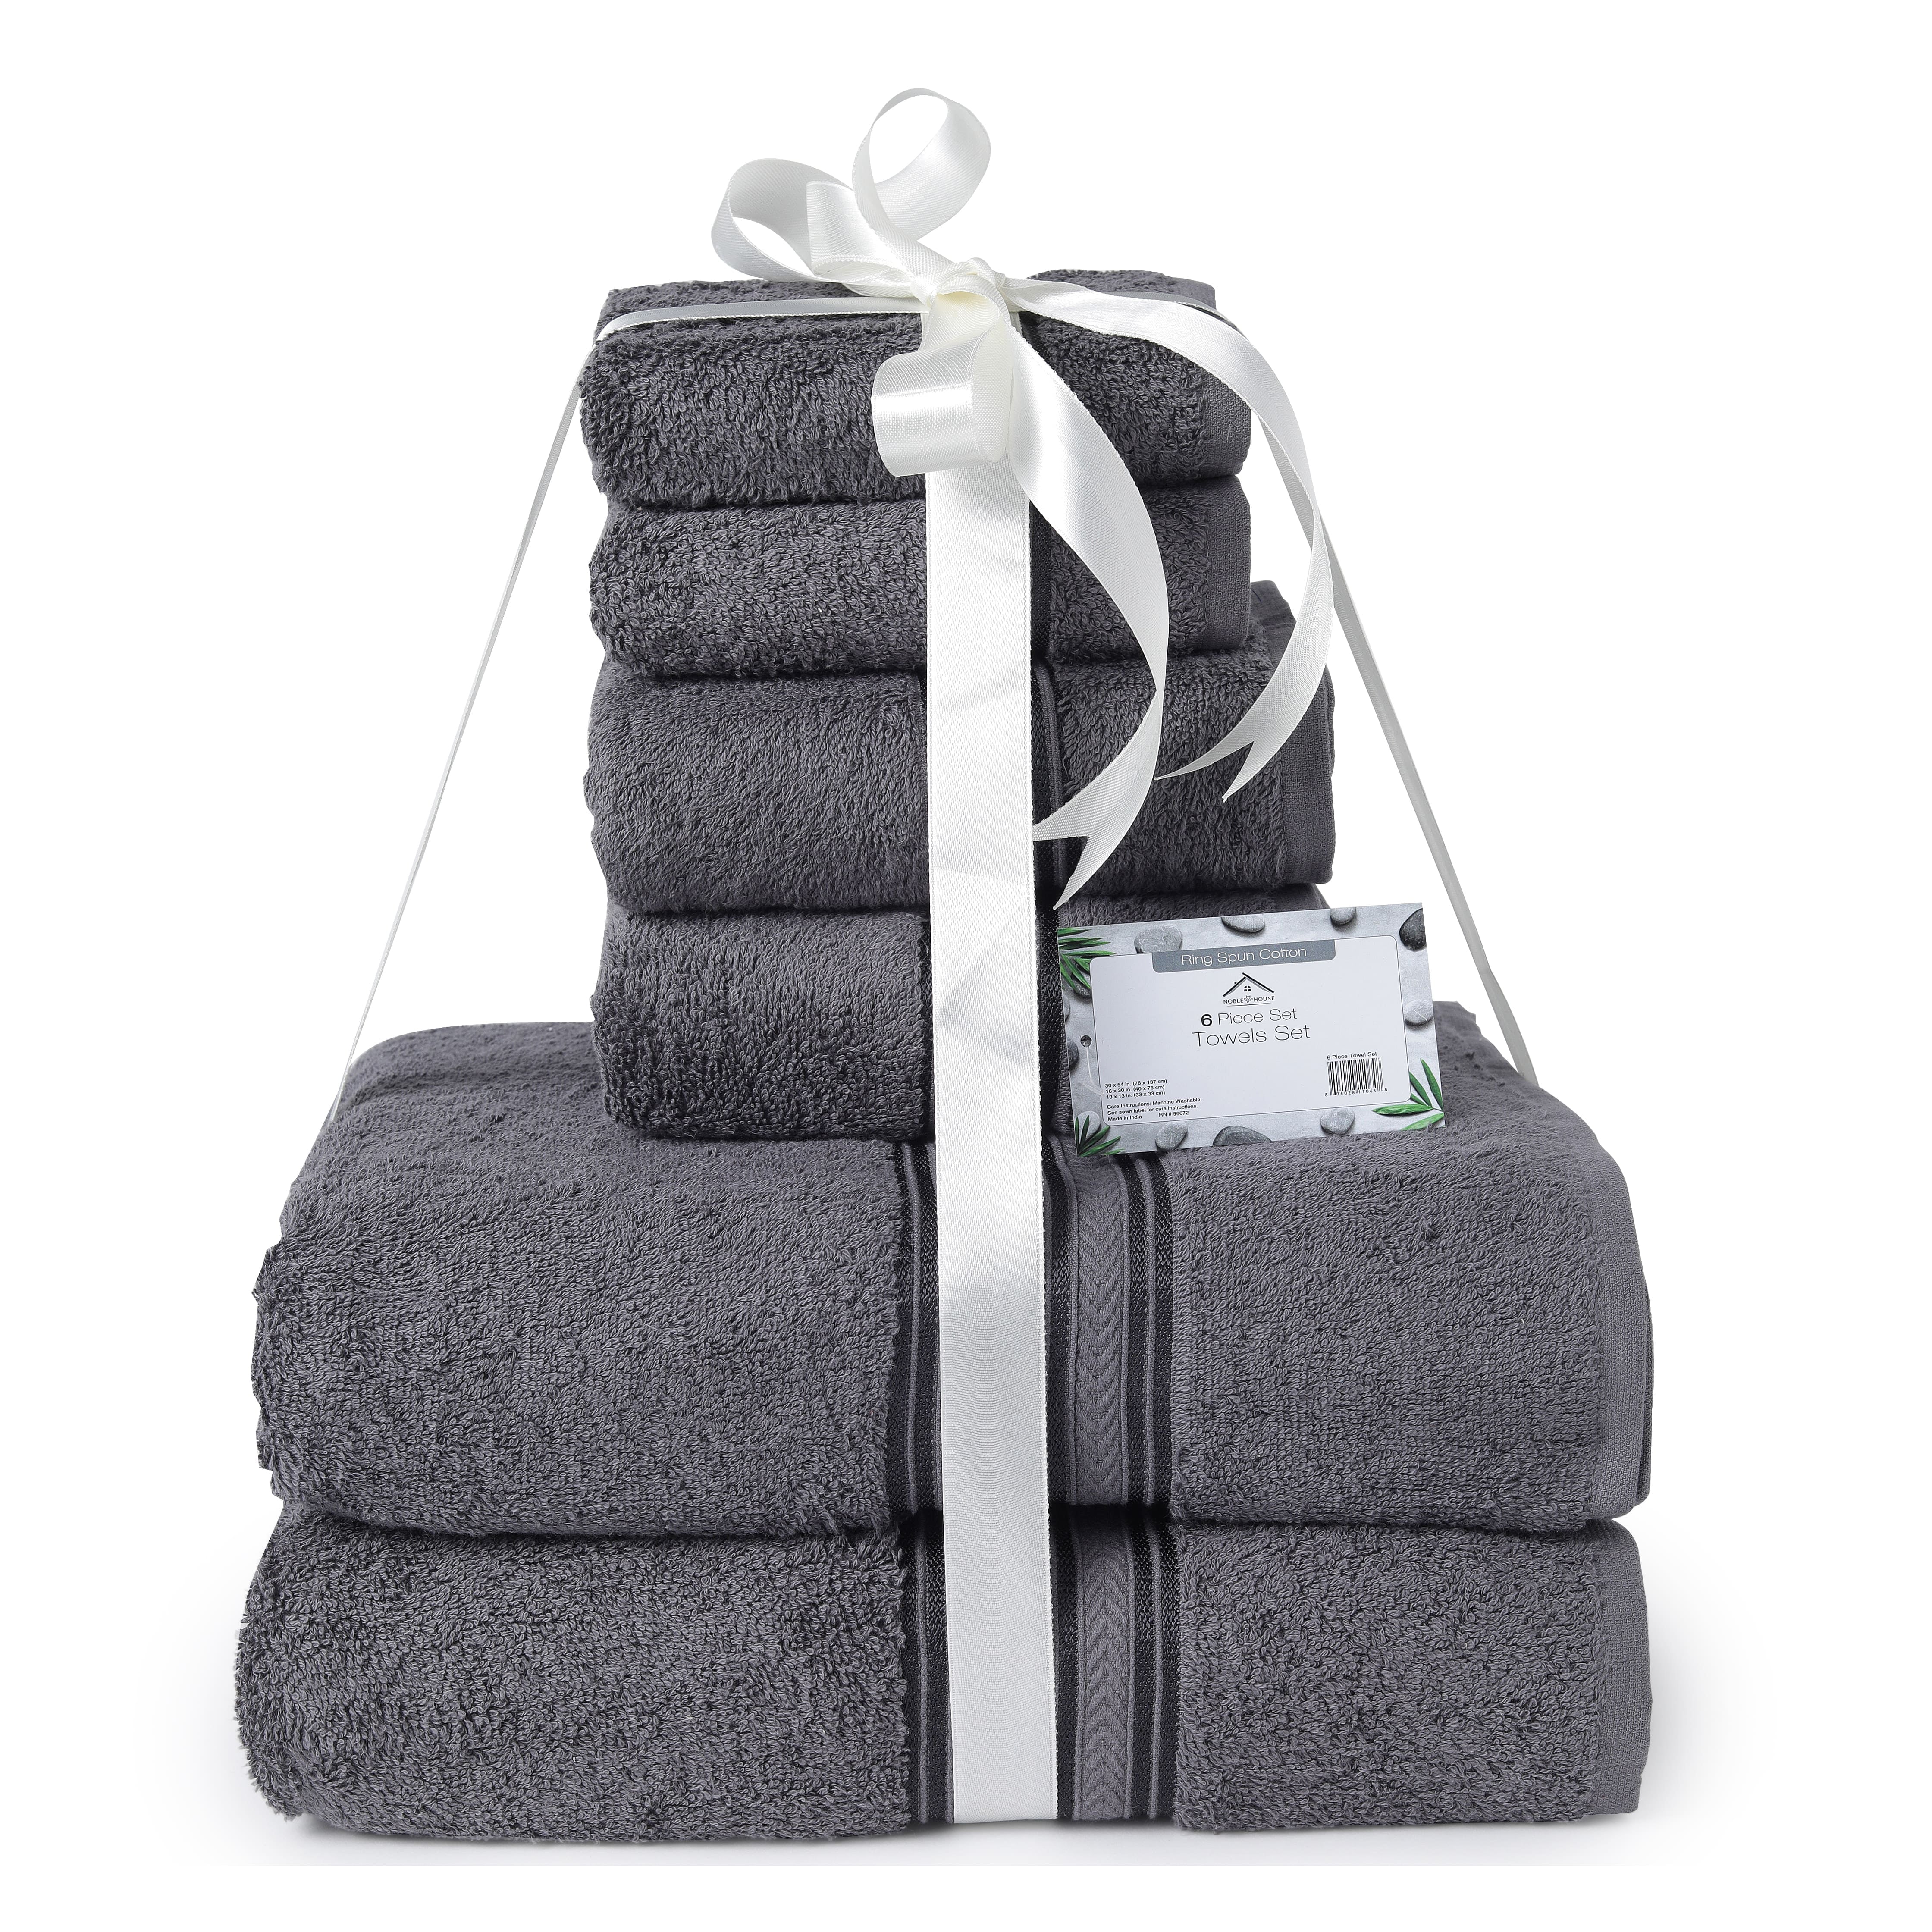 Cotton Bath Towel Set, 6 Piece, White, 58L x 30W | Kirkland's Home